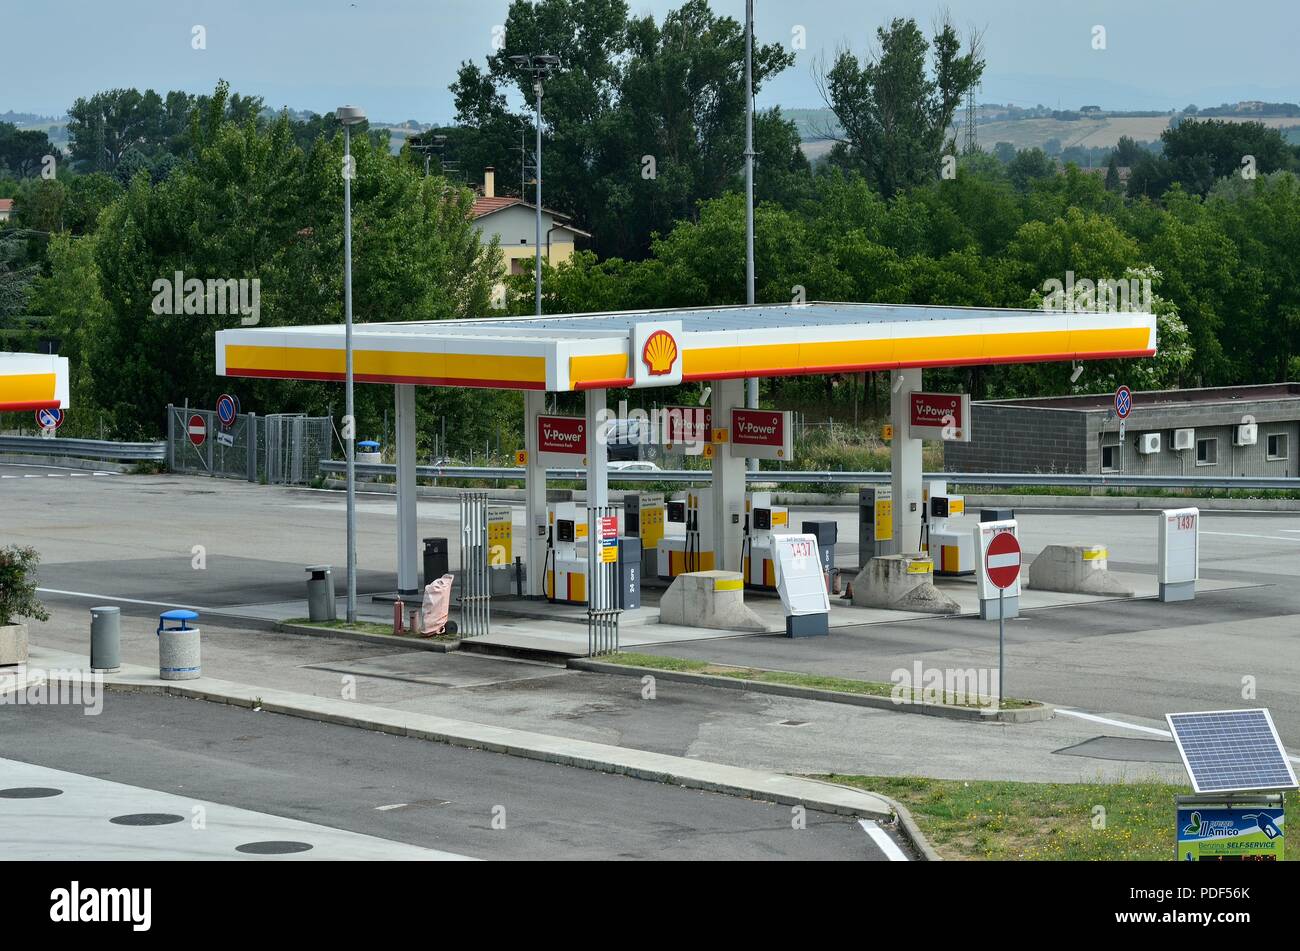 Une vue de Self Service typique de la pompe à essence Shell / Station service / avec hors de n'importe qui pour le remplissage du gaz, près de l'autoroute, Pise, Italie, Europe Banque D'Images